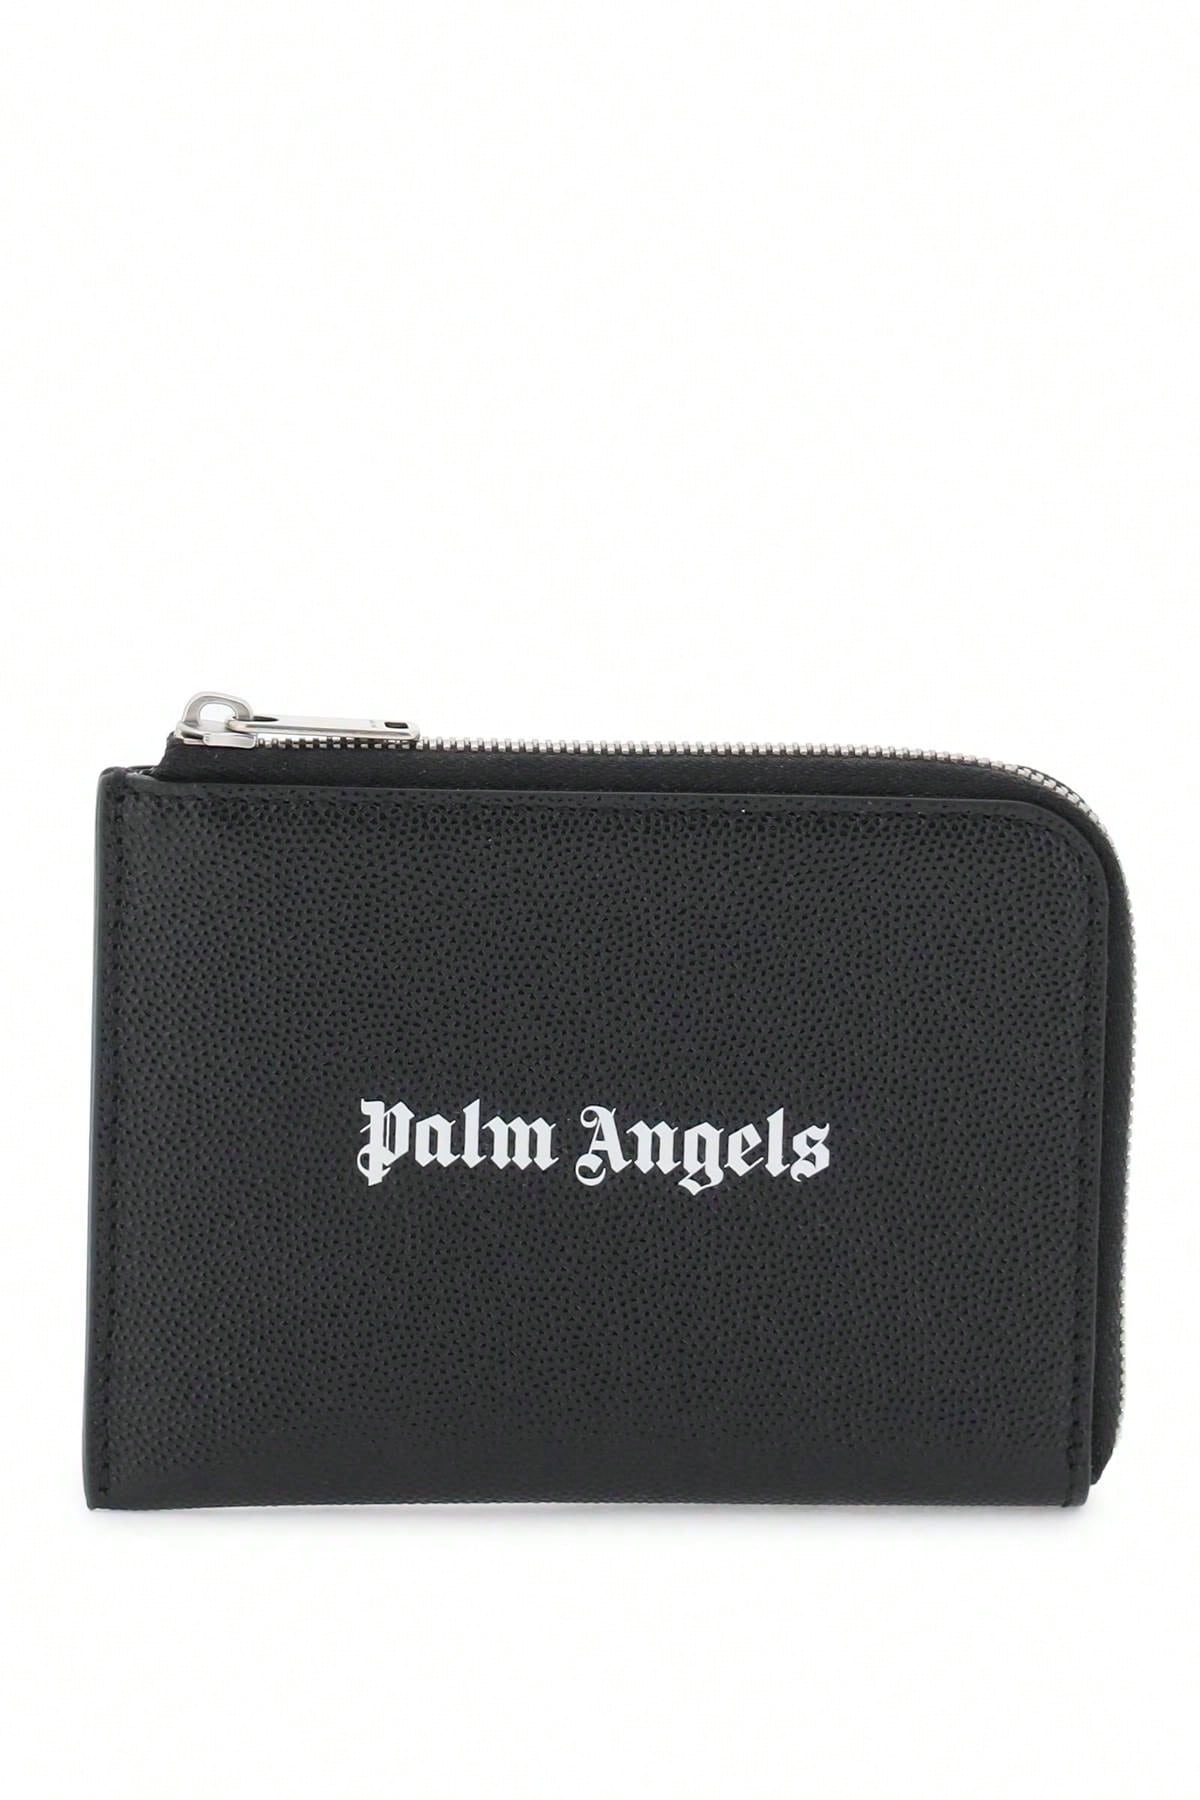 Palm Angels Миниатюрная сумка Palm Angels с выдвижным картхолдером, черный novotel palm